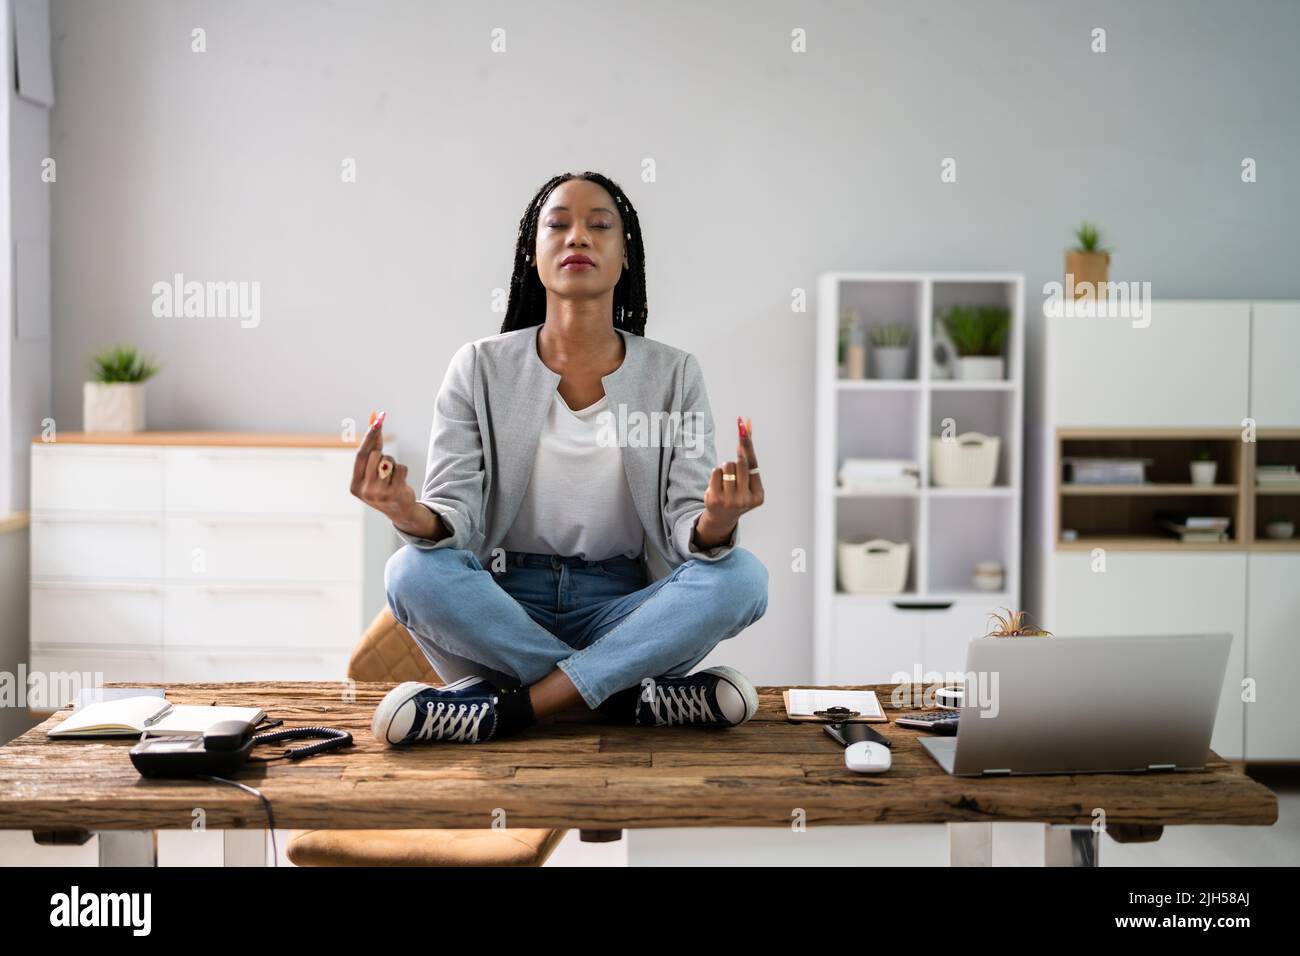 Un employé africain faisant de la santé mentale Yoga Méditation en bureau Banque D'Images